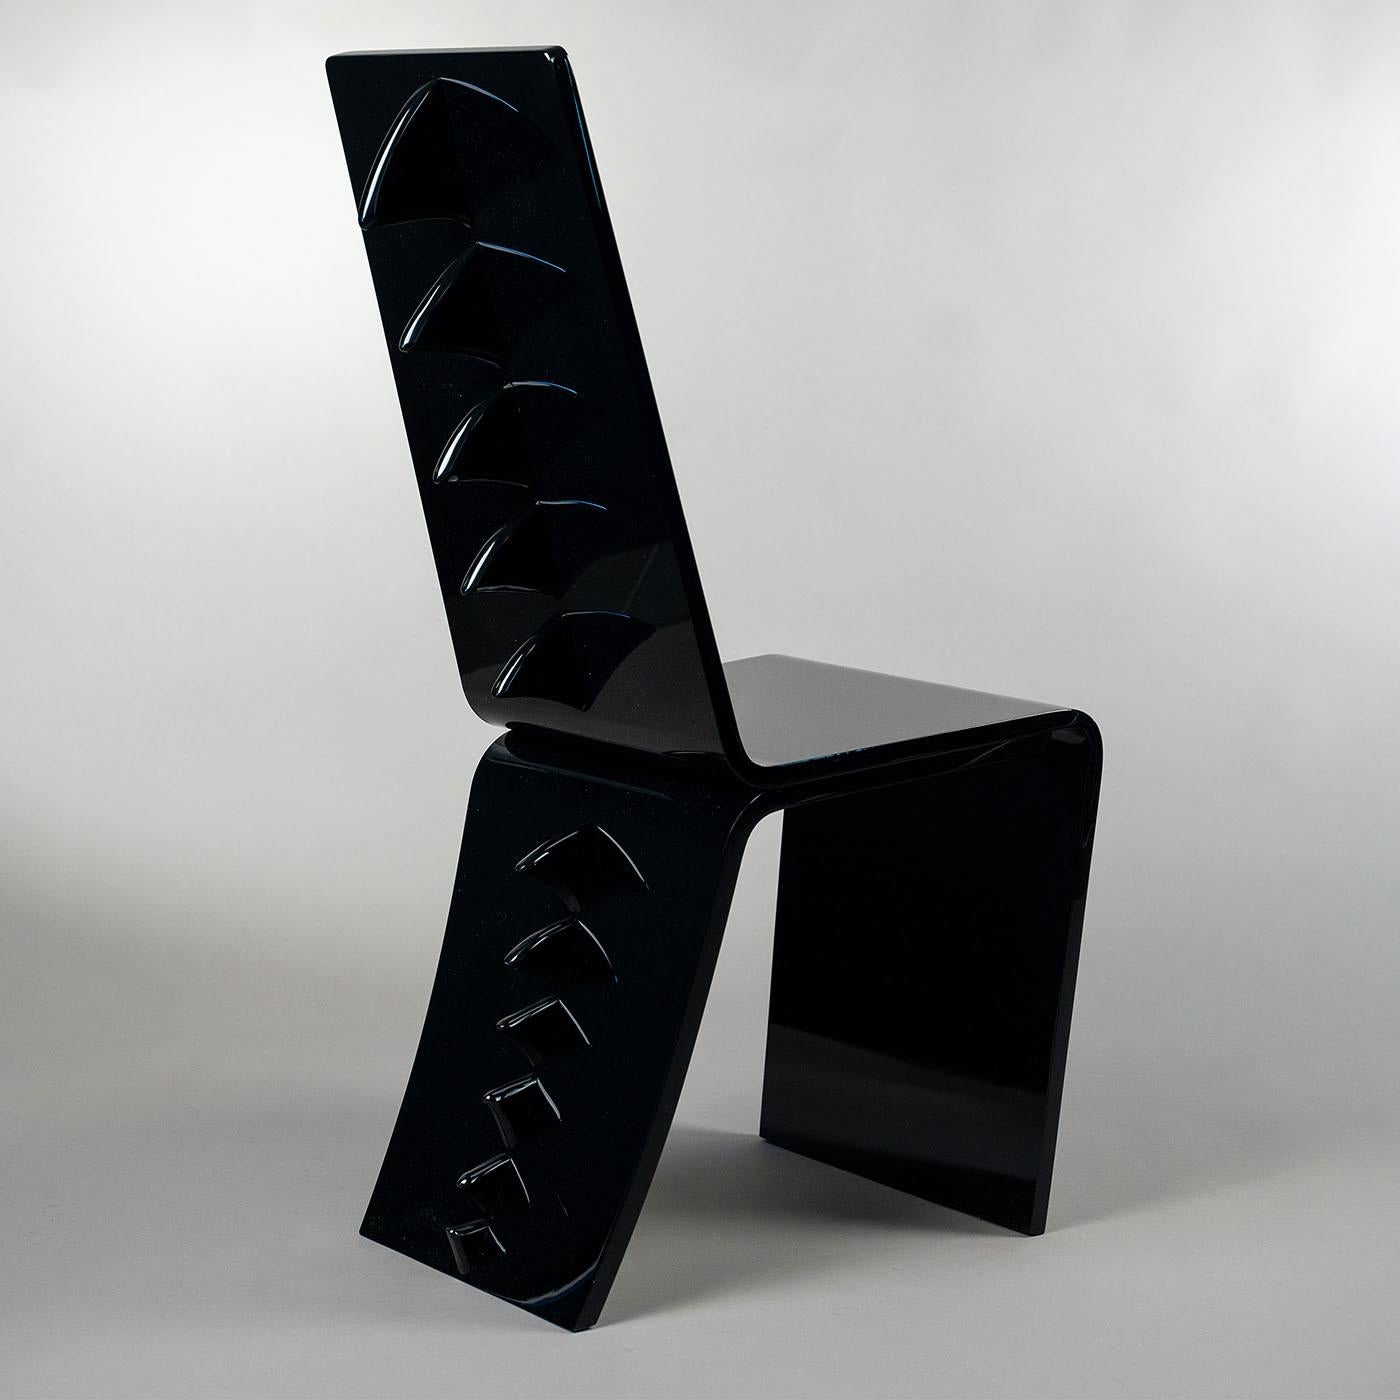 Dieser dynamische und leichte Stuhl aus schwarzem PMMA wird von geschickten Handwerkern gefertigt und ist eine Ode an die Drachen, die in einem raffinierten zeitgenössischen Design umgesetzt wird. Die nach oben hin immer größer werdenden Stacheln